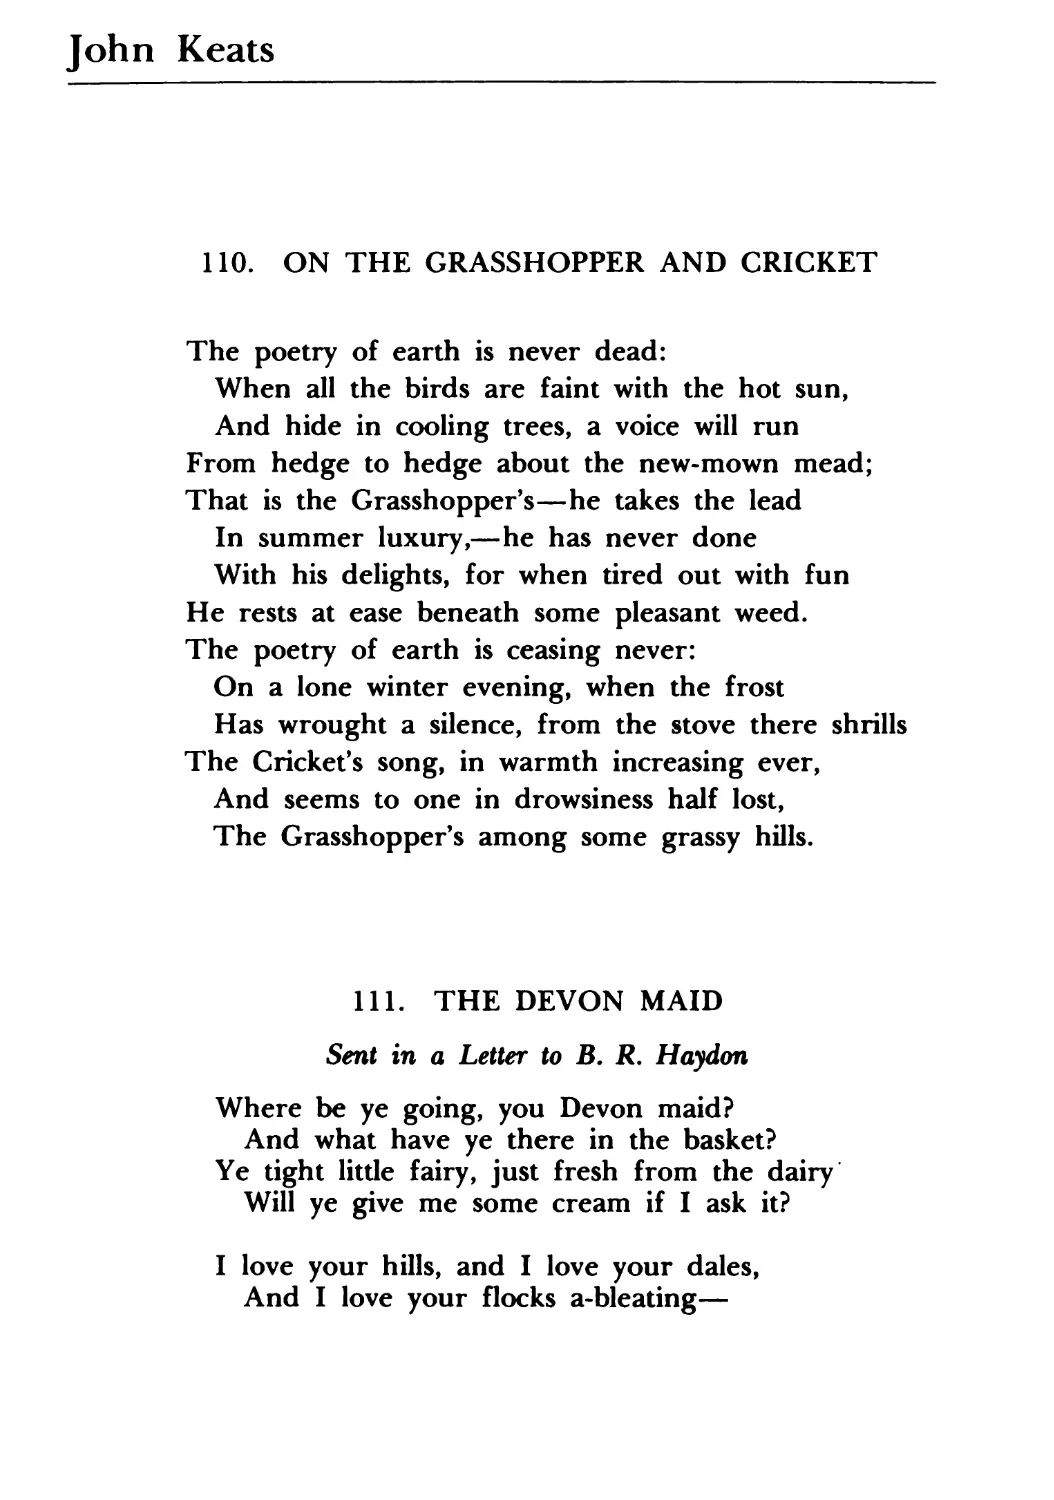 John Keats
111. The Devon Maid